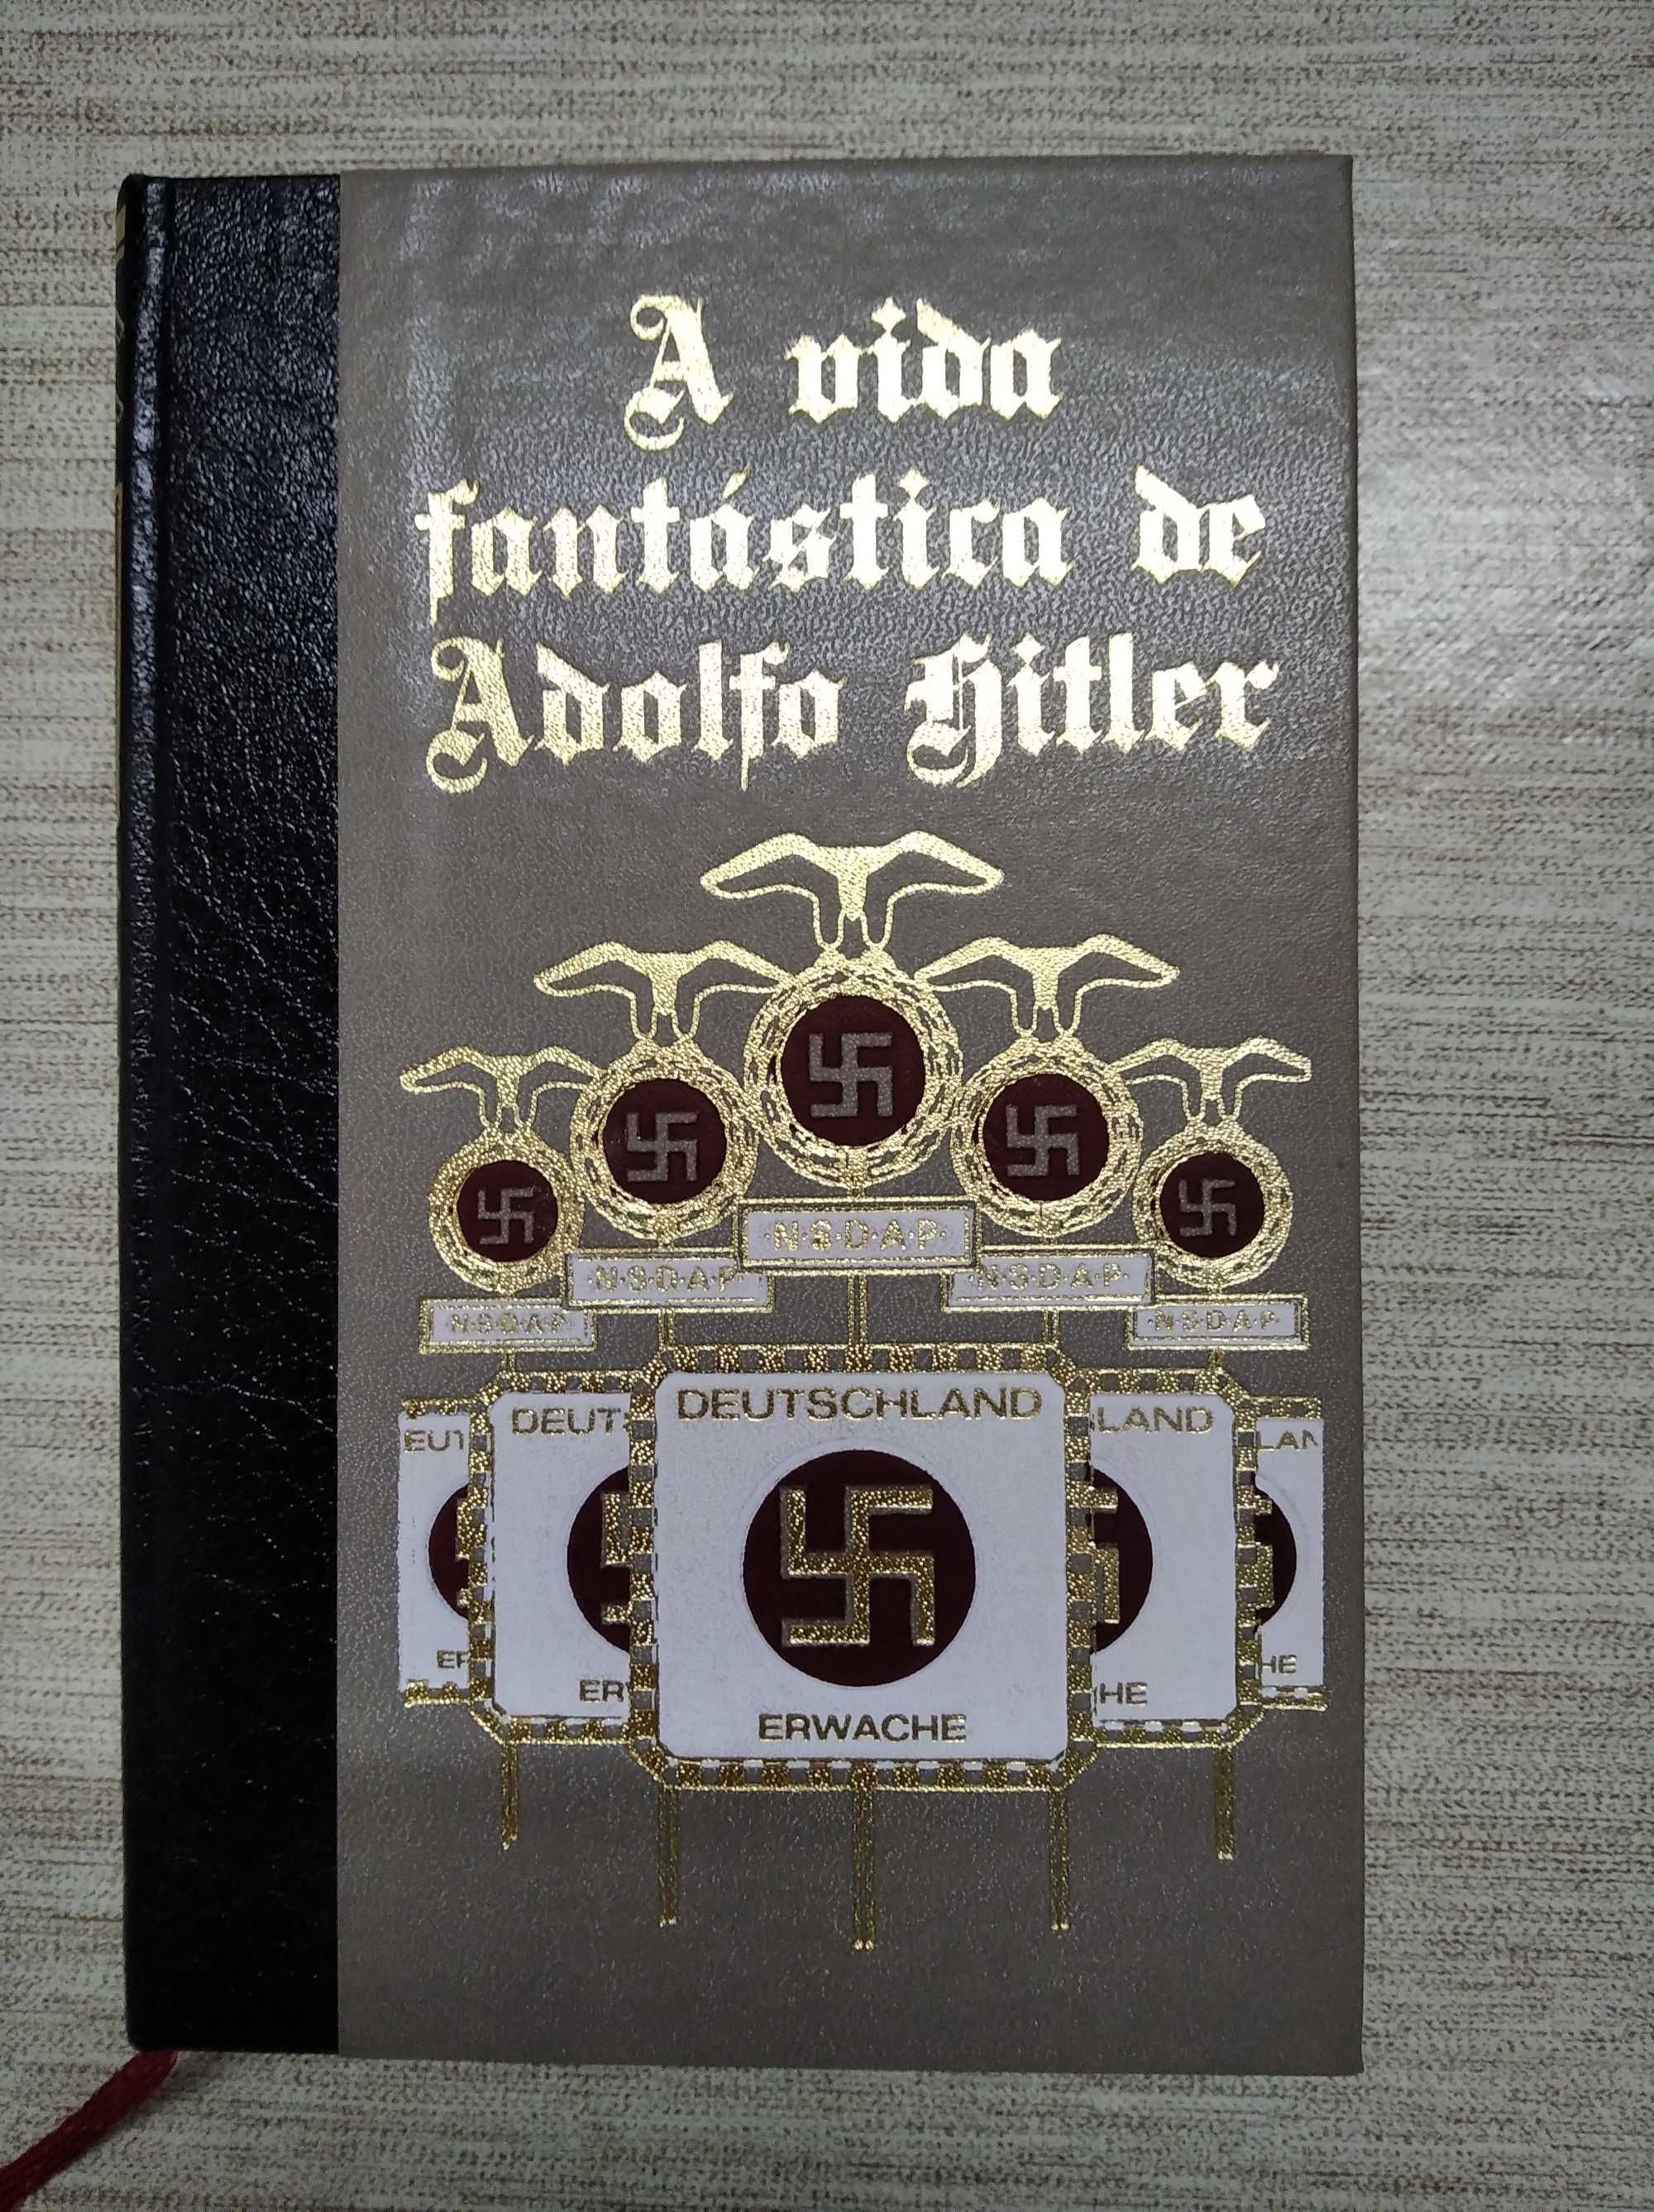 A vida fantástica de Adolfo Hitler